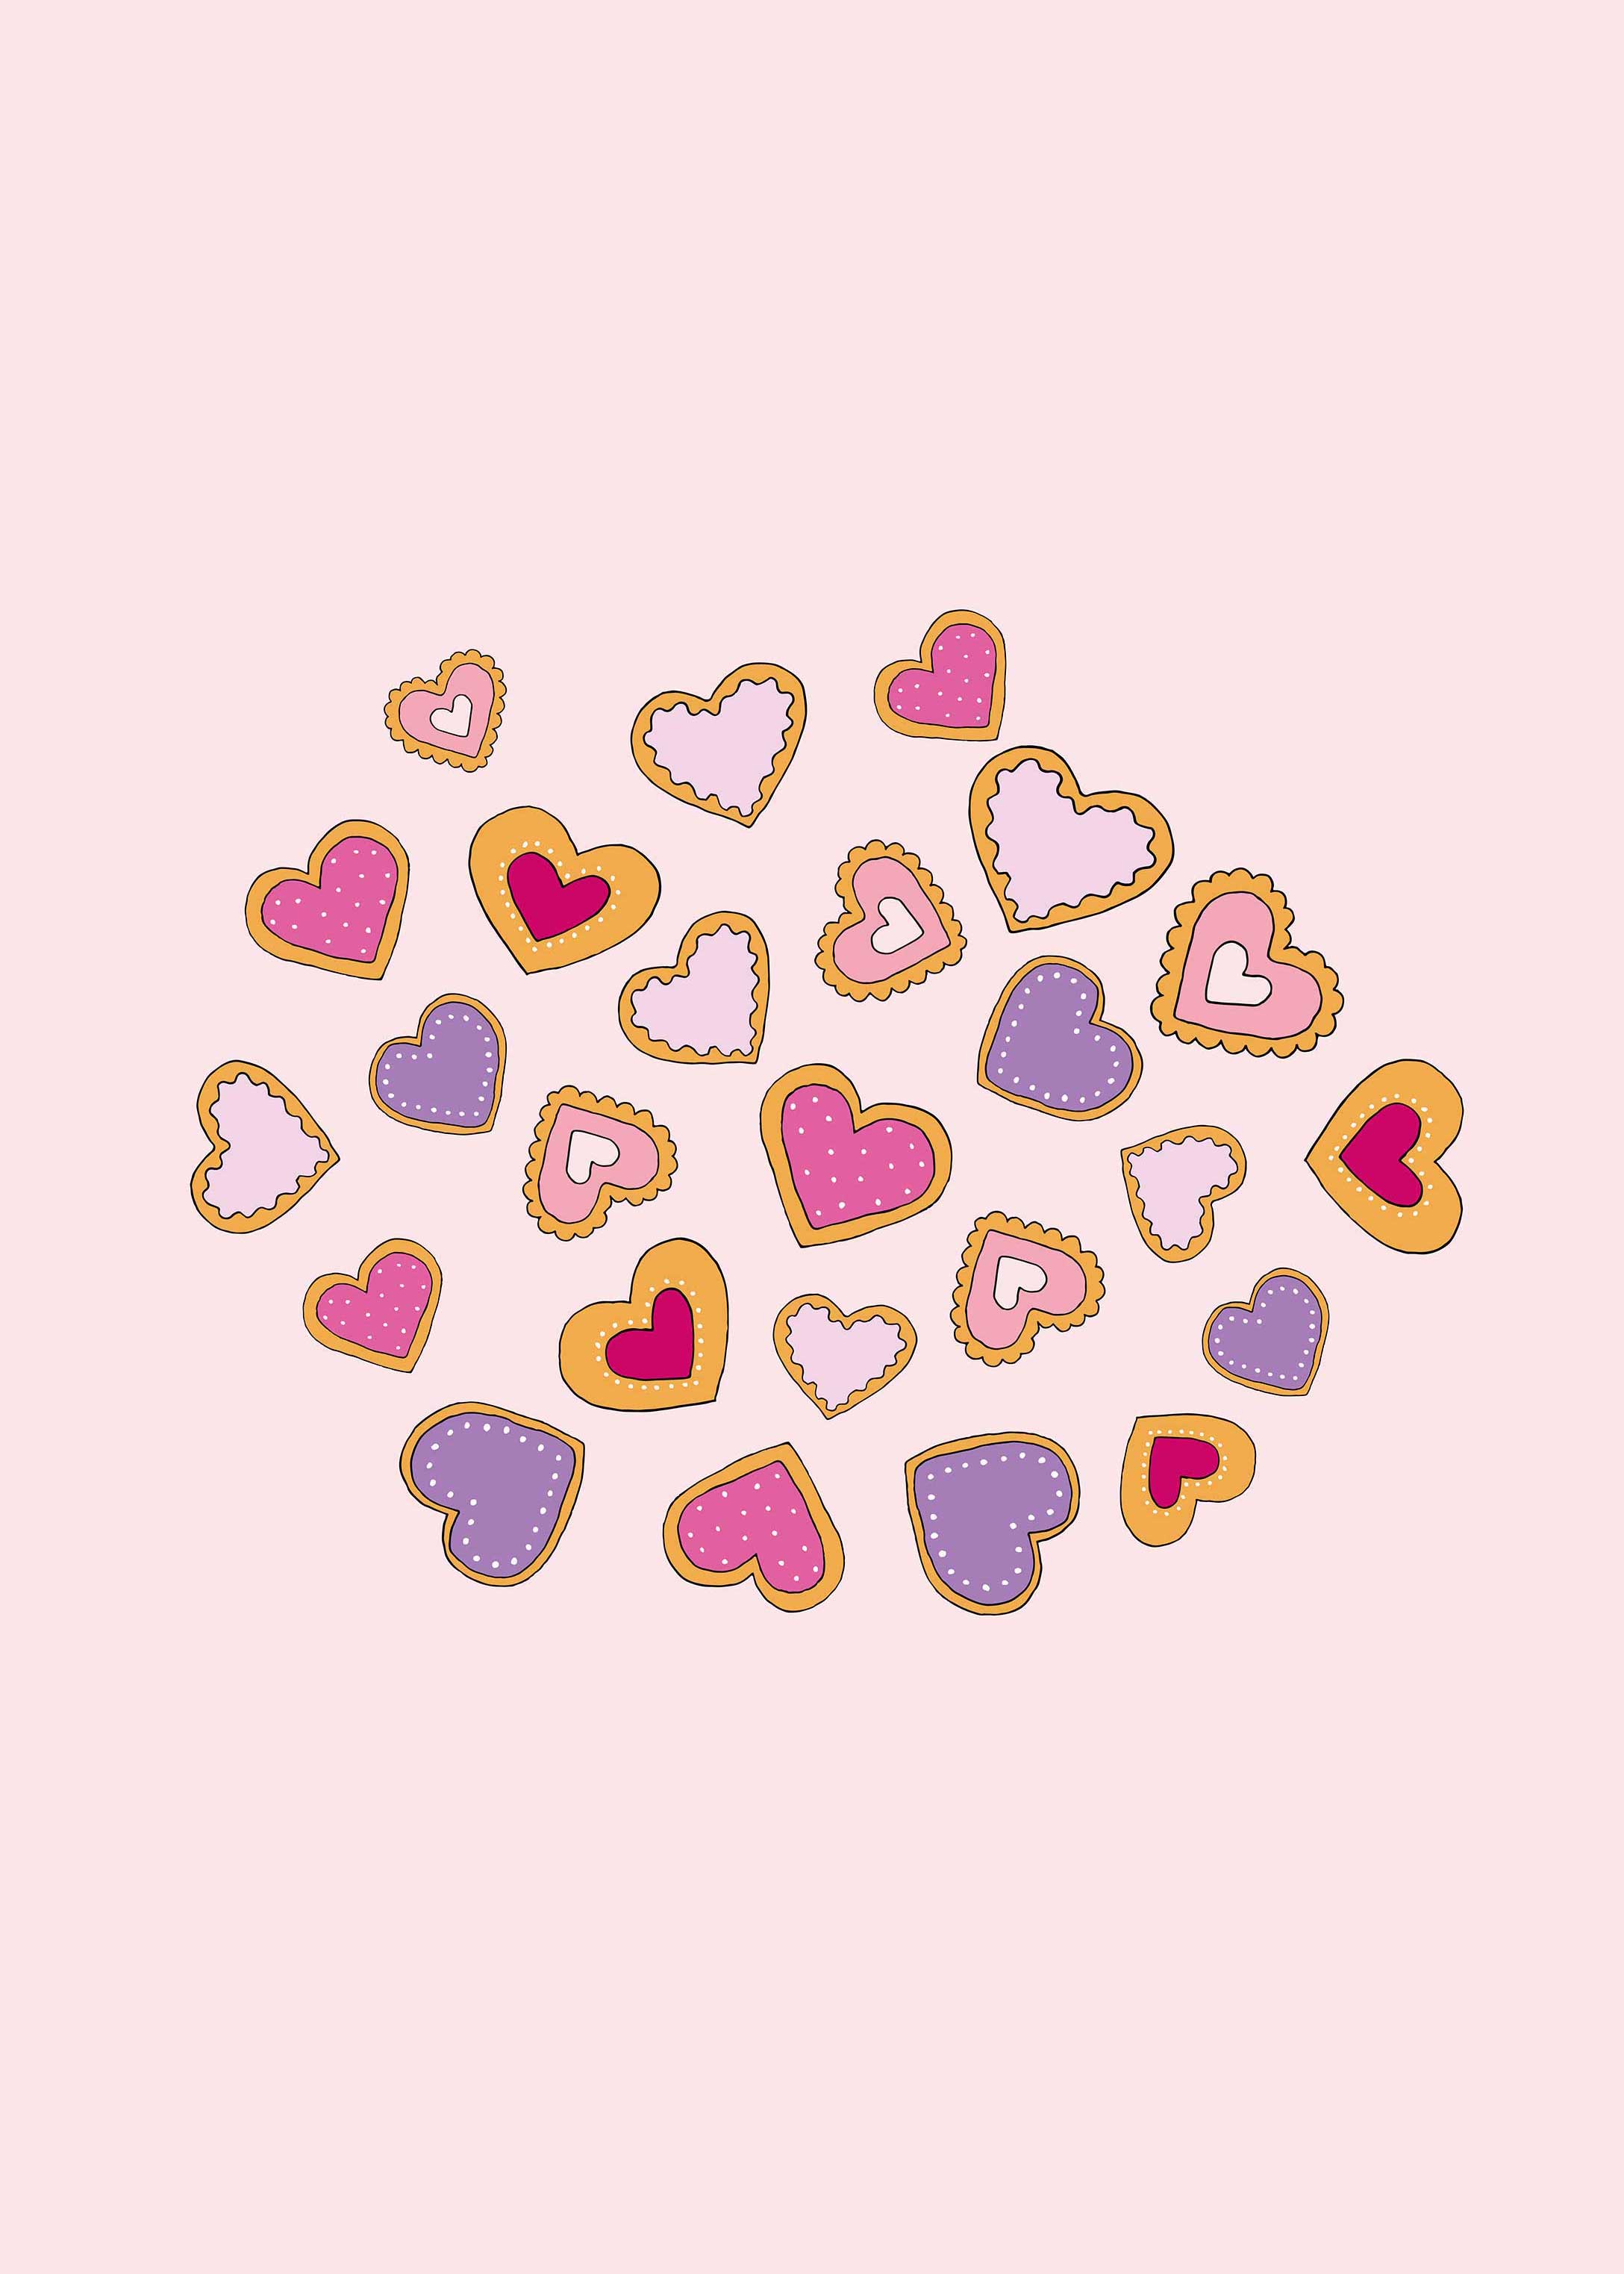 Valentine's Day heart cookies desktop wallpaper - free download for desktop, iPad and iPhone